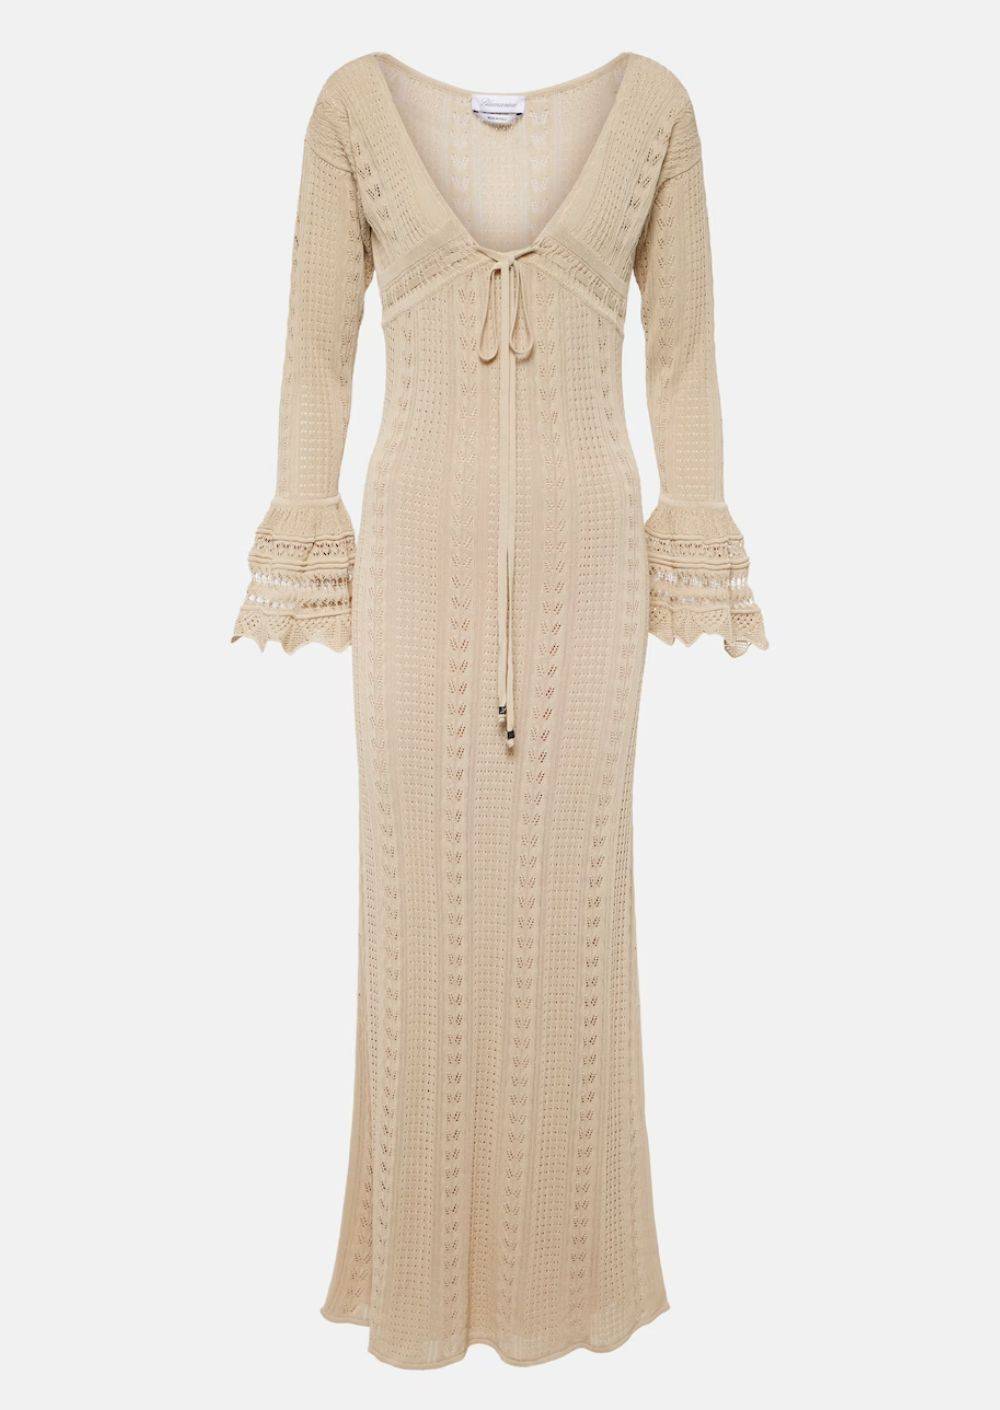 Szydełkowa sukienka z letnich wyprzedaży, Blumarine, przeceniona na ok. 2910 zł (Fot. materiały prasowe)